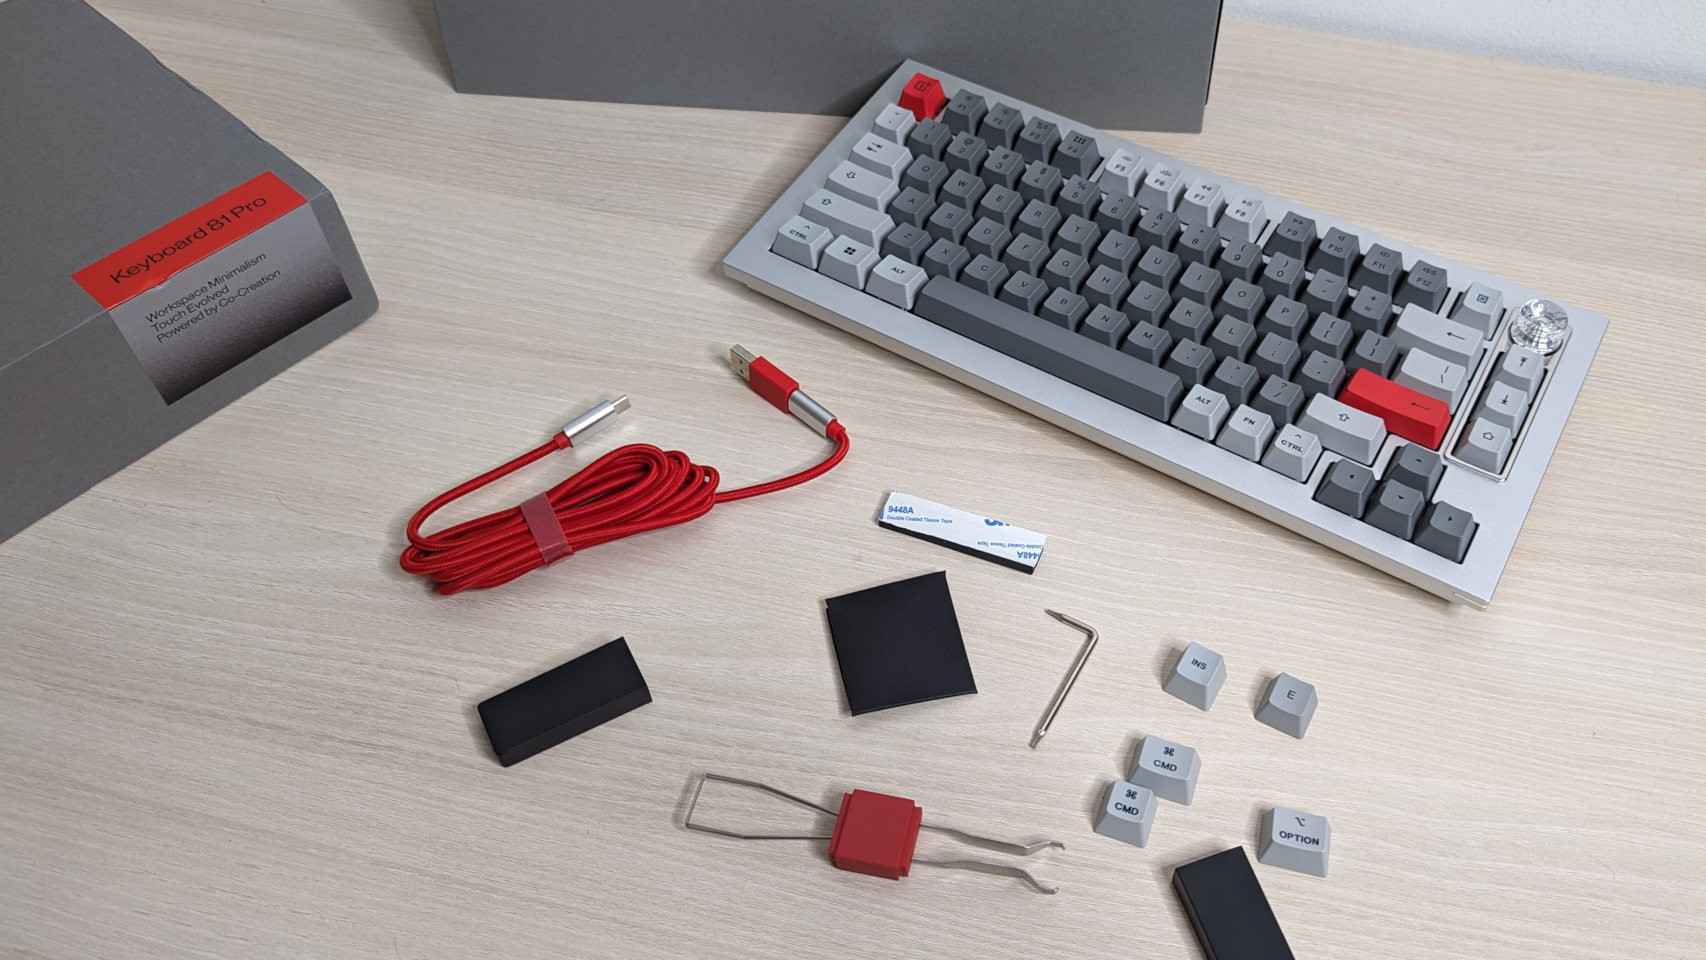 El teclado de OnePlus viene con muchos accesorios y herramientas